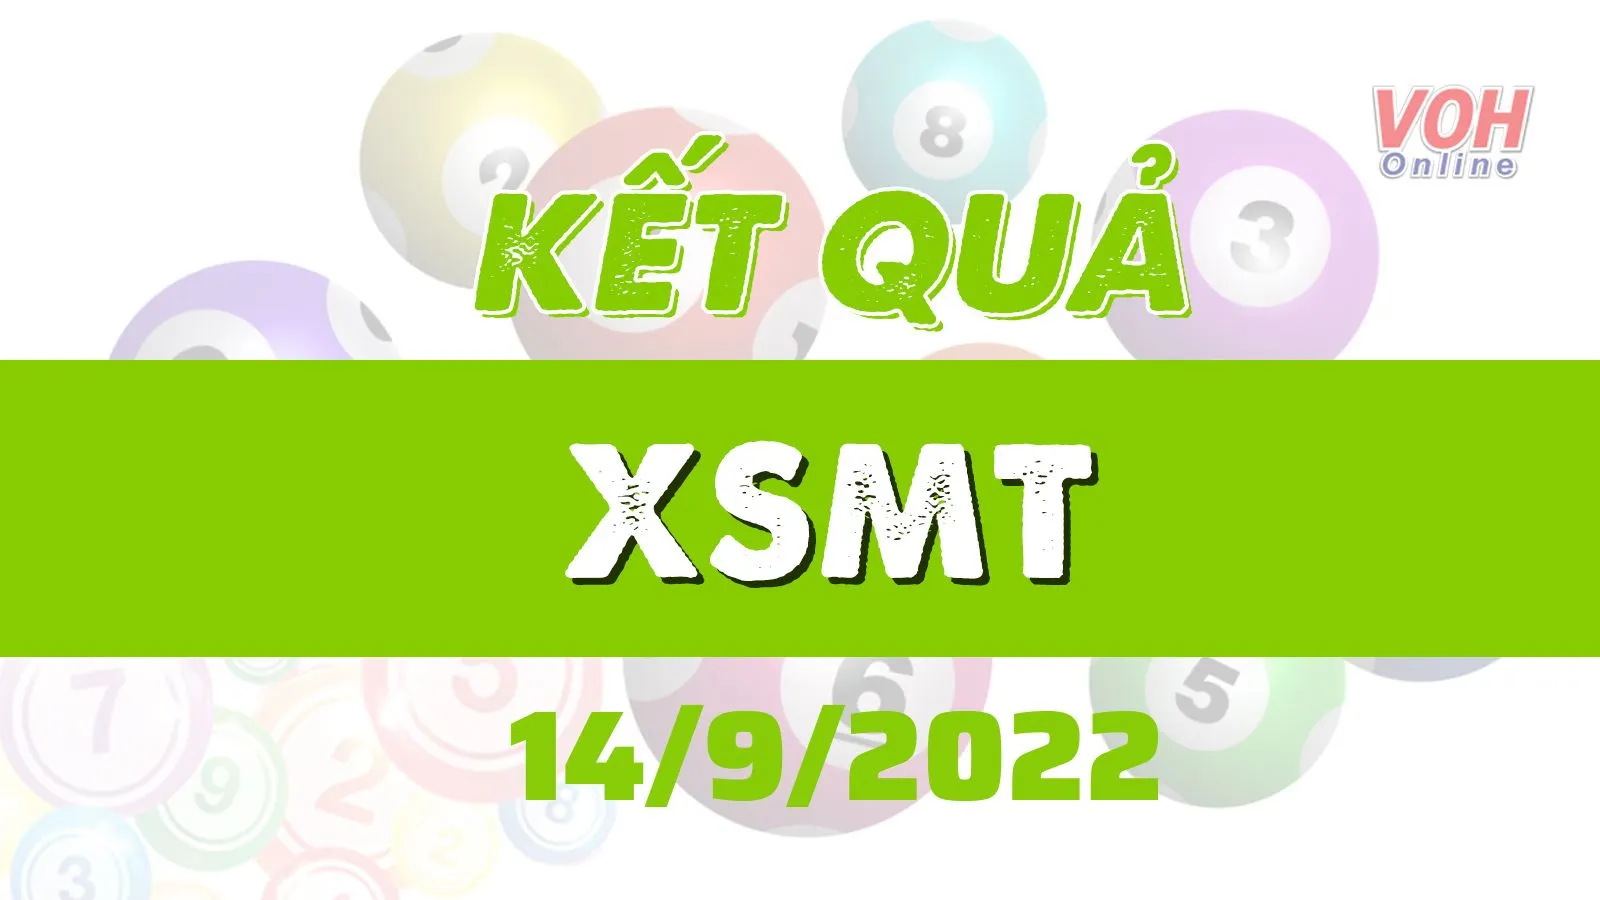 Xổ số miền Trung hôm nay, XSMT 14/9, SXMT 14/9/2022 - Kết quả xổ số ngày 14 tháng 9